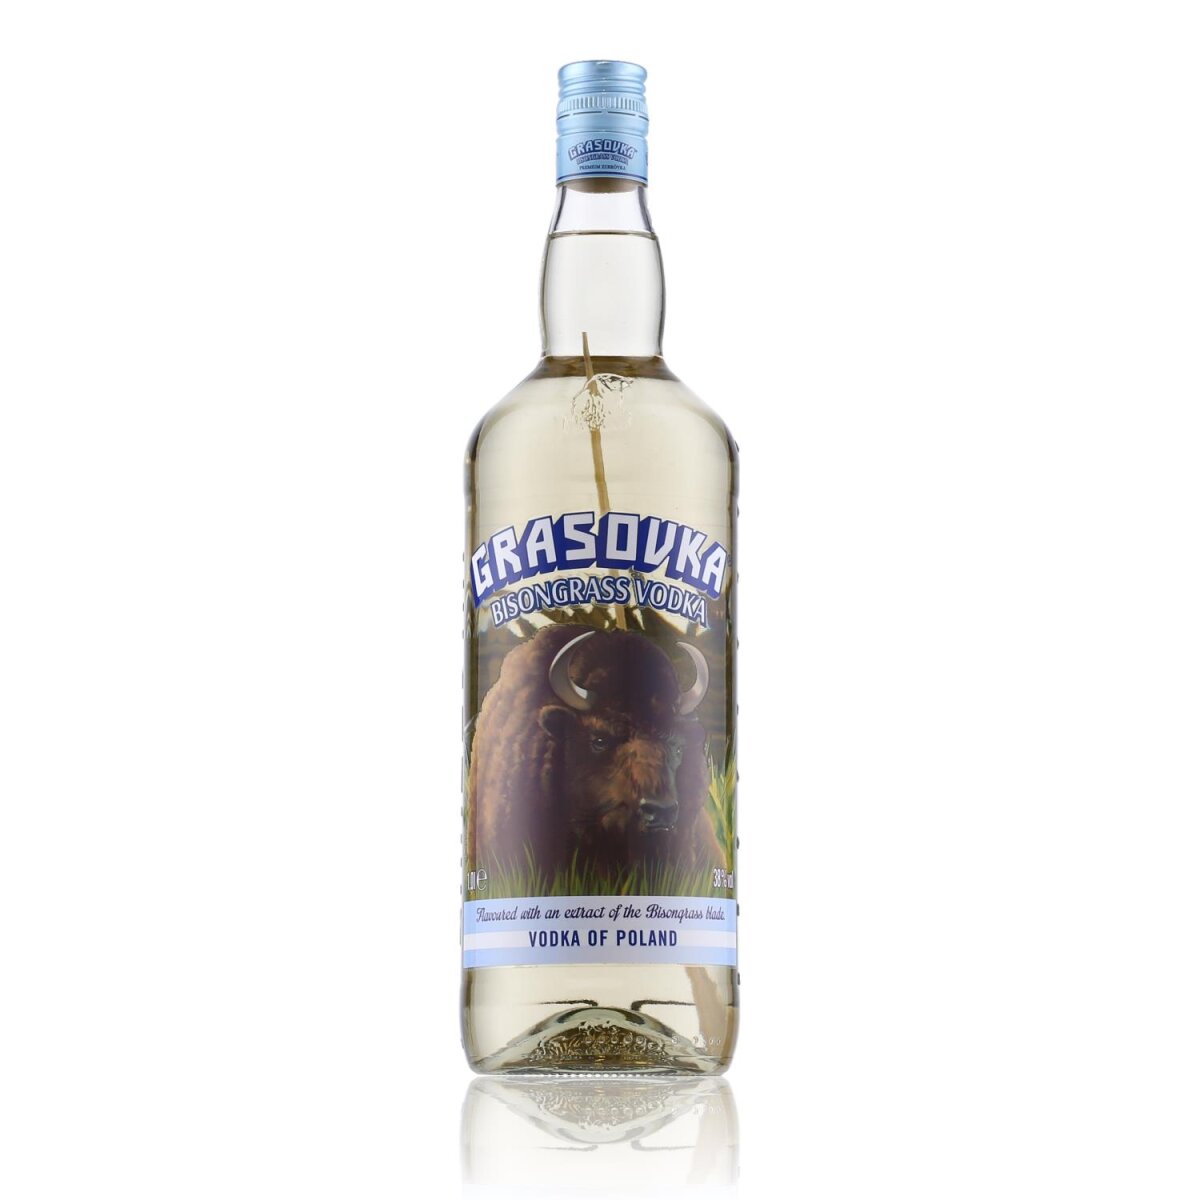 Grasovka Bisongrass Vodka 38% 16,89 Vol. € 1l